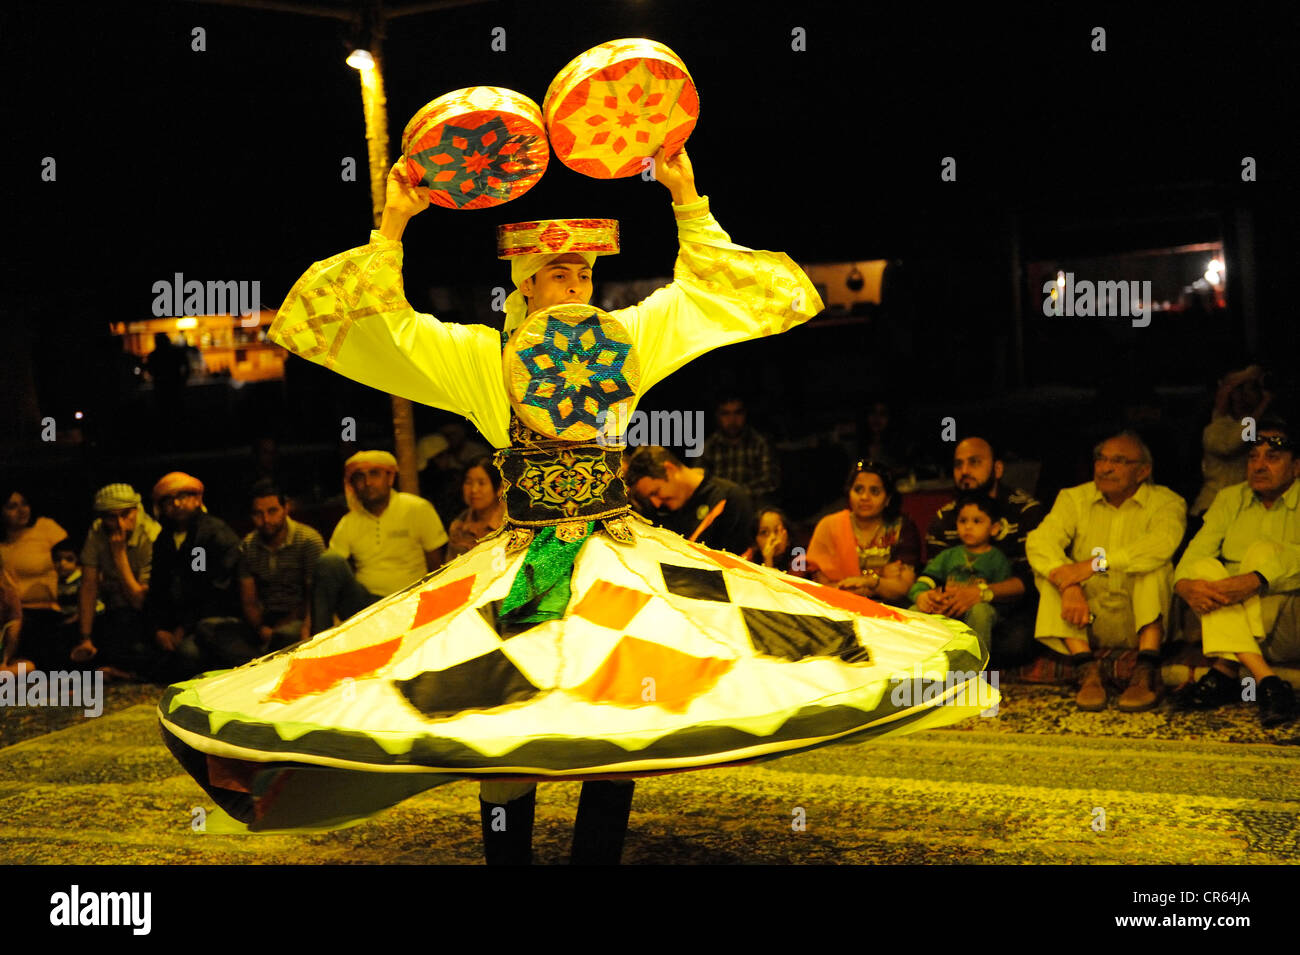 Danse folklorique dans un camp dans le désert, Dubaï, Émirats arabes unis, l'Arabie, à l'Est, Moyen Orient Banque D'Images